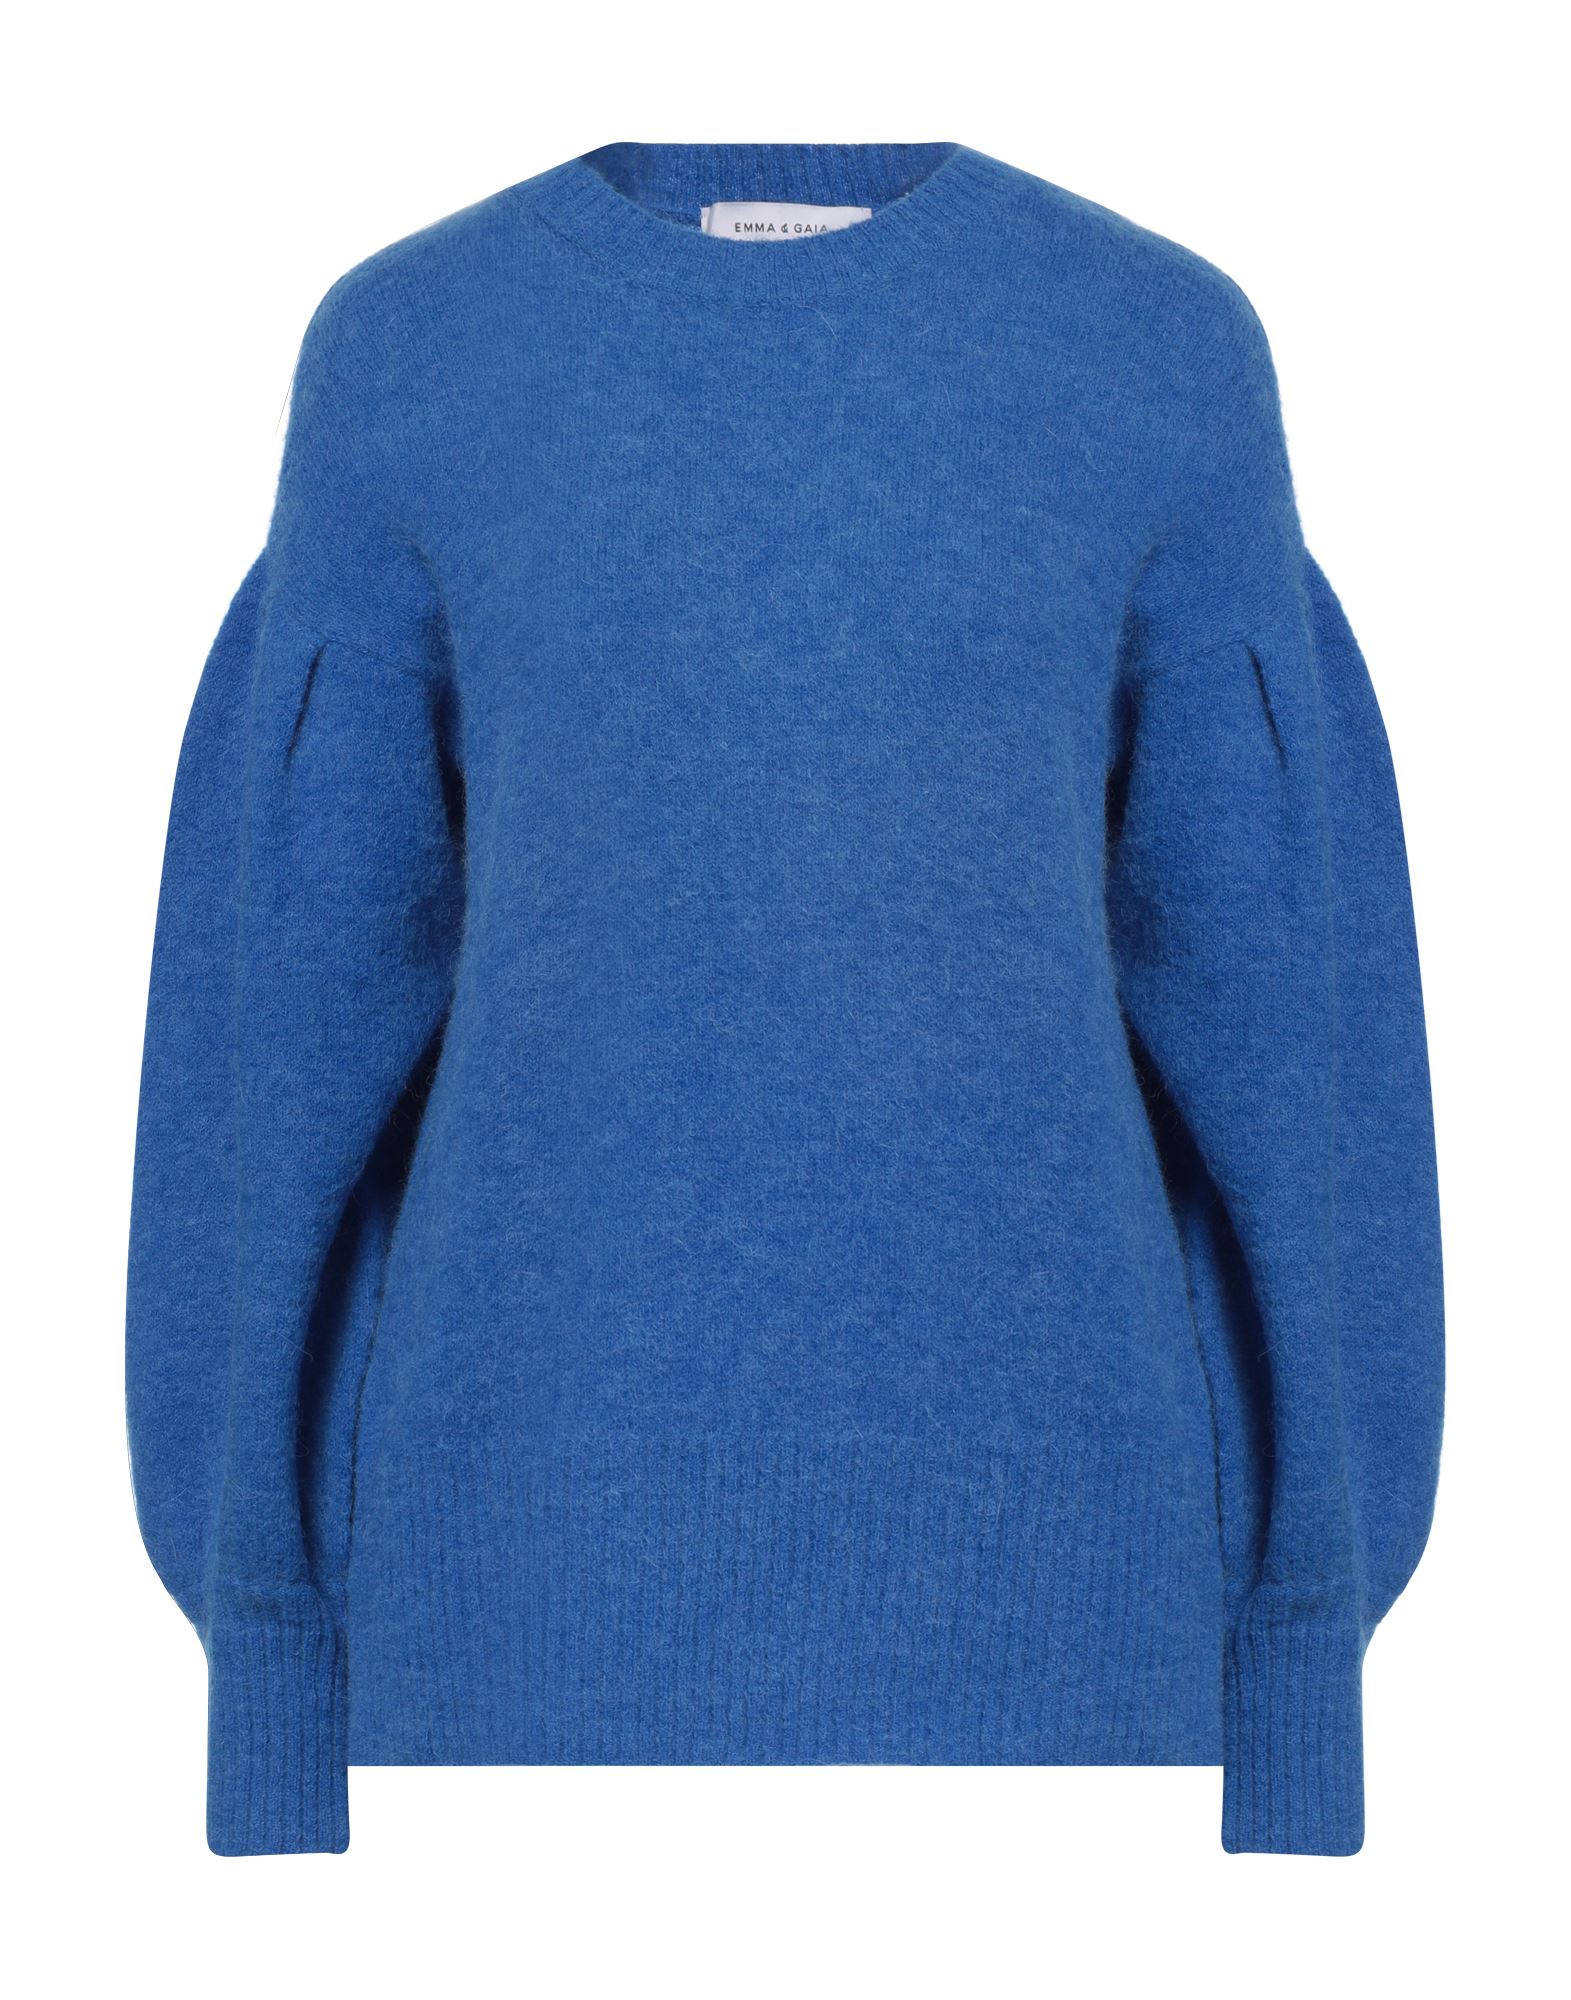 Emma & Gaia Sweaters In Blue